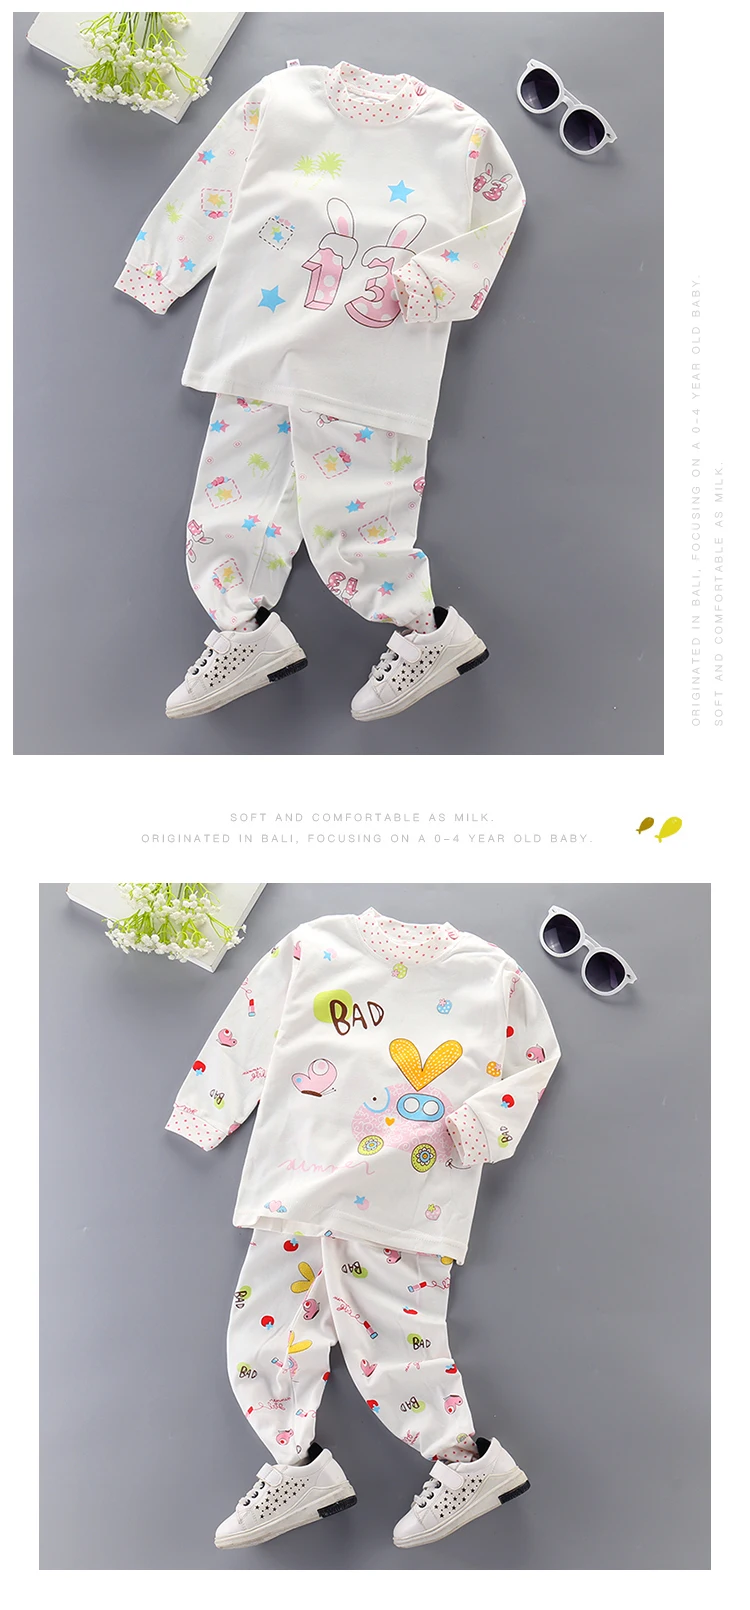 BOVURRL/Зимний спортивный костюм, рубашка с рисунком+ штаны, комплект детской одежды из 2 предметов, осенний комплект с длинными рукавами для маленьких мальчиков 24 мес.-5 лет